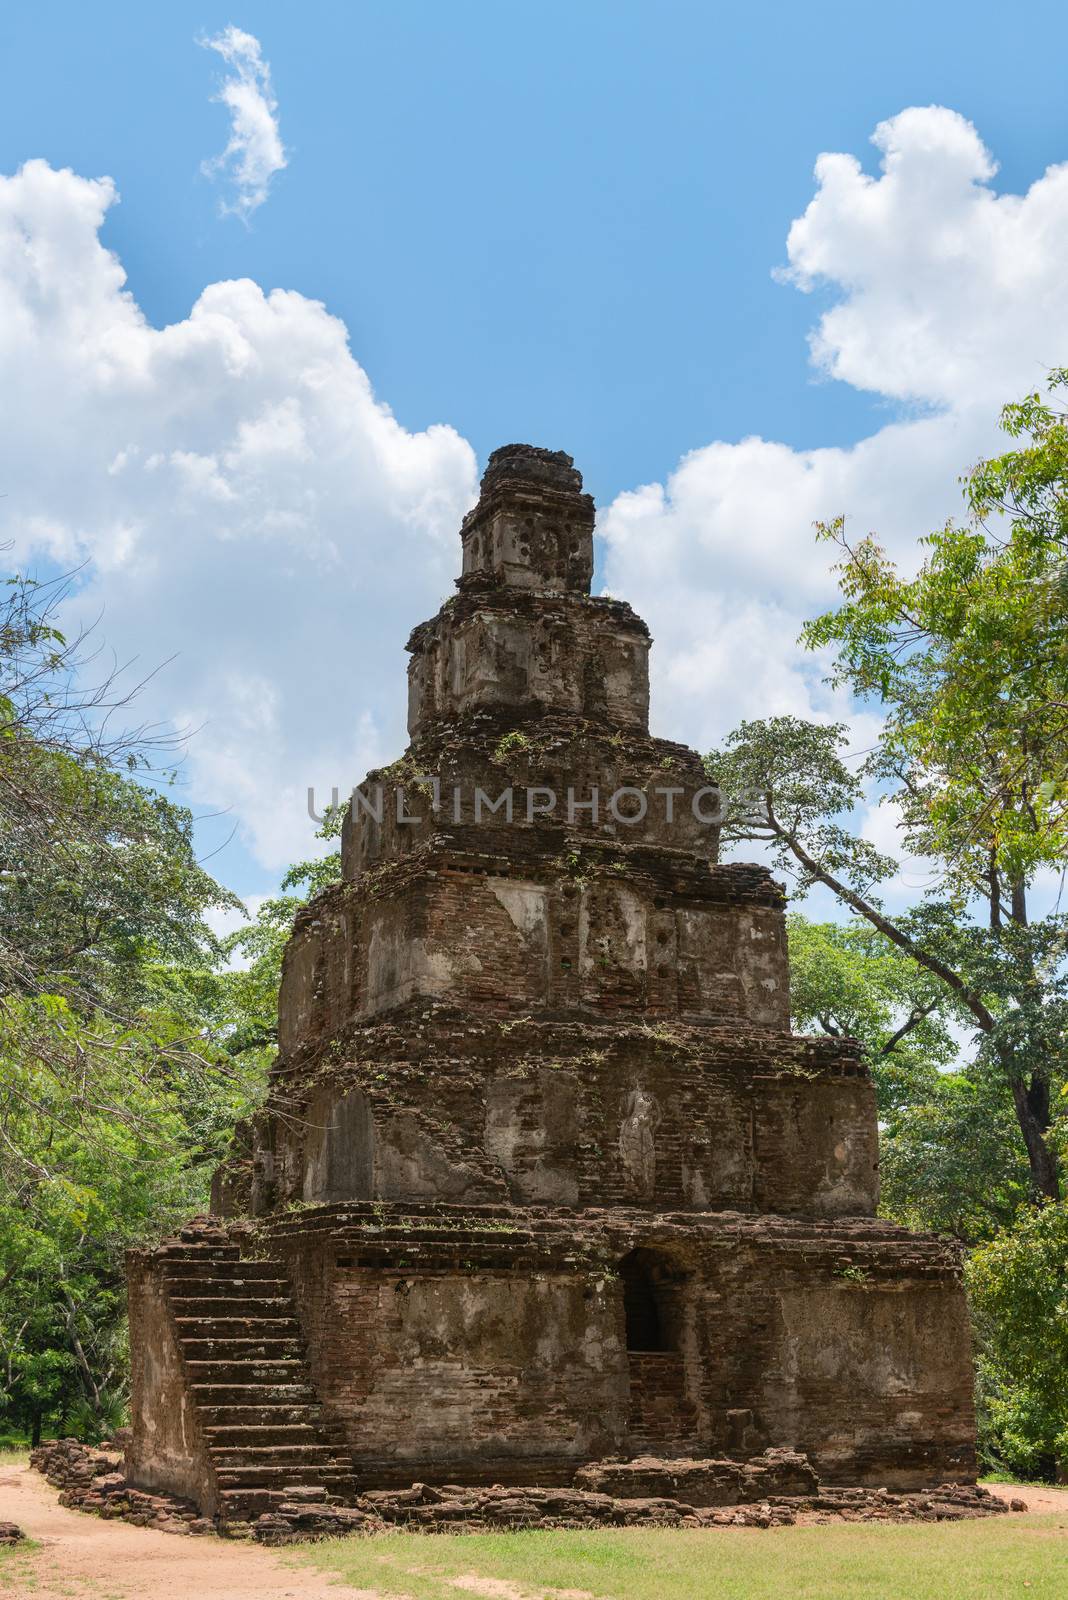 Samahal prasada pyramidal Buddhist temple, Polonnaruwa, Sri Lanka